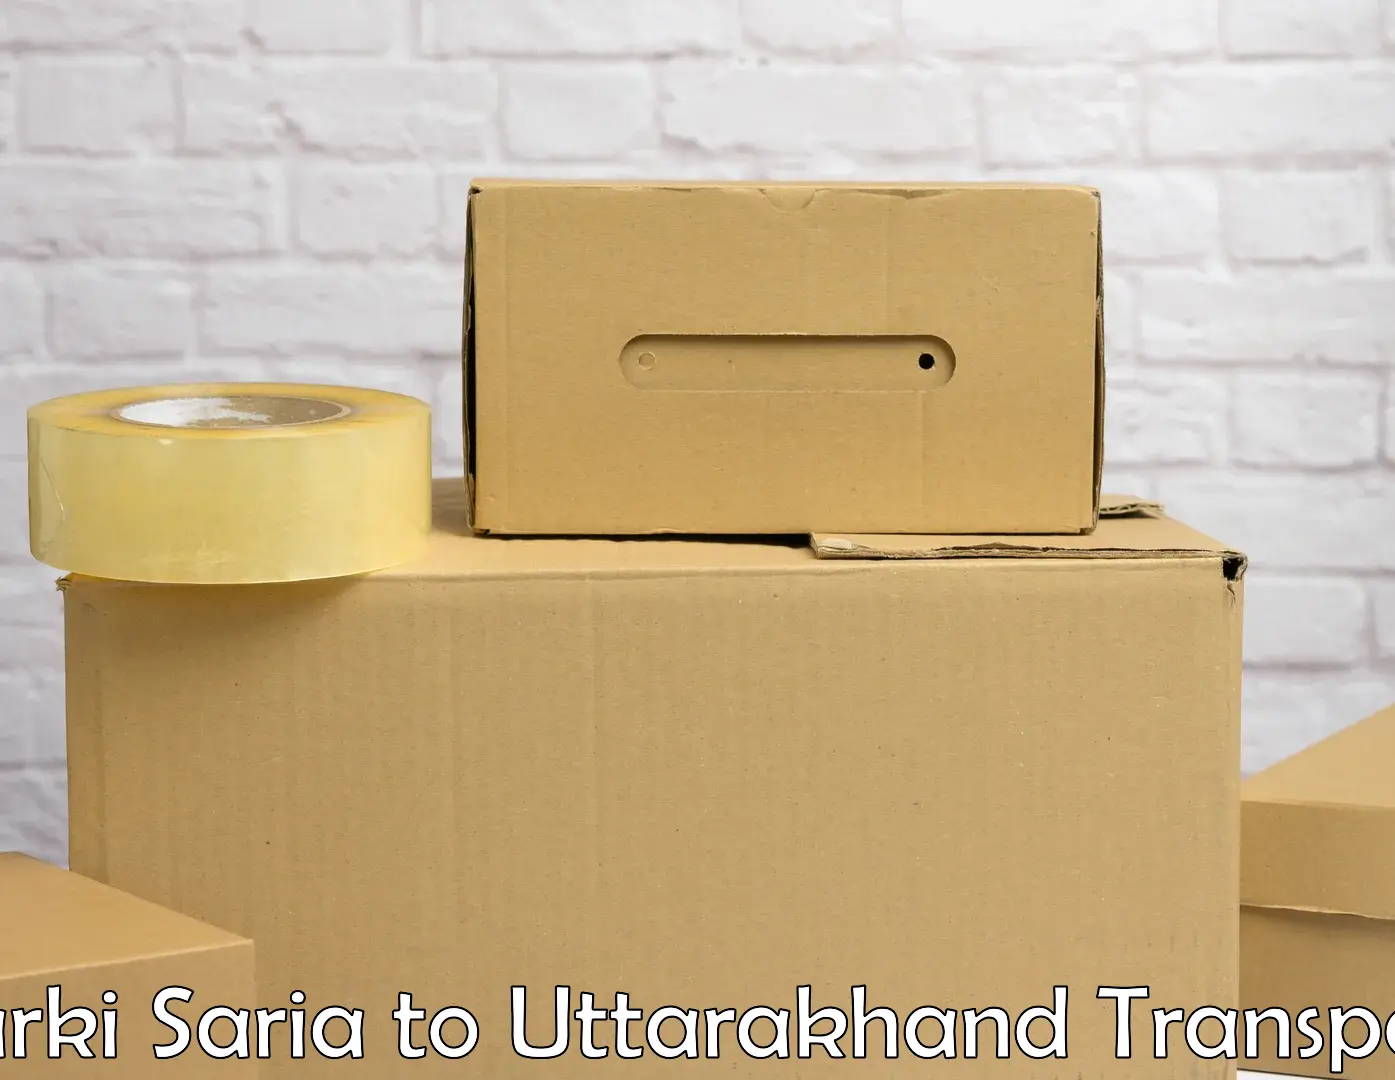 Two wheeler parcel service Barki Saria to Ranikhet